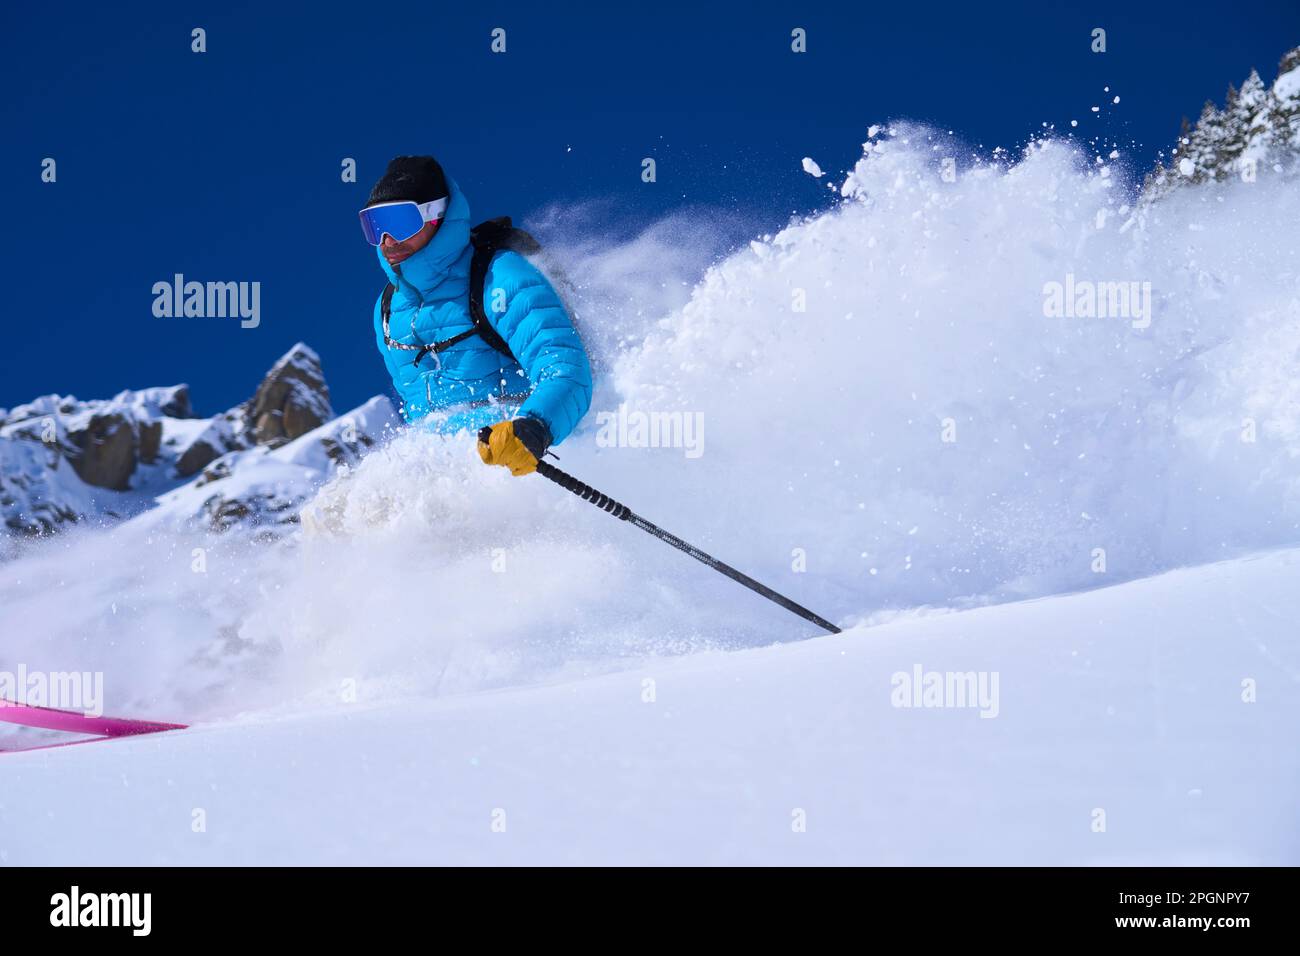 Hombre que lleva gafas de esquí esquí esquí en la nieve Foto de stock